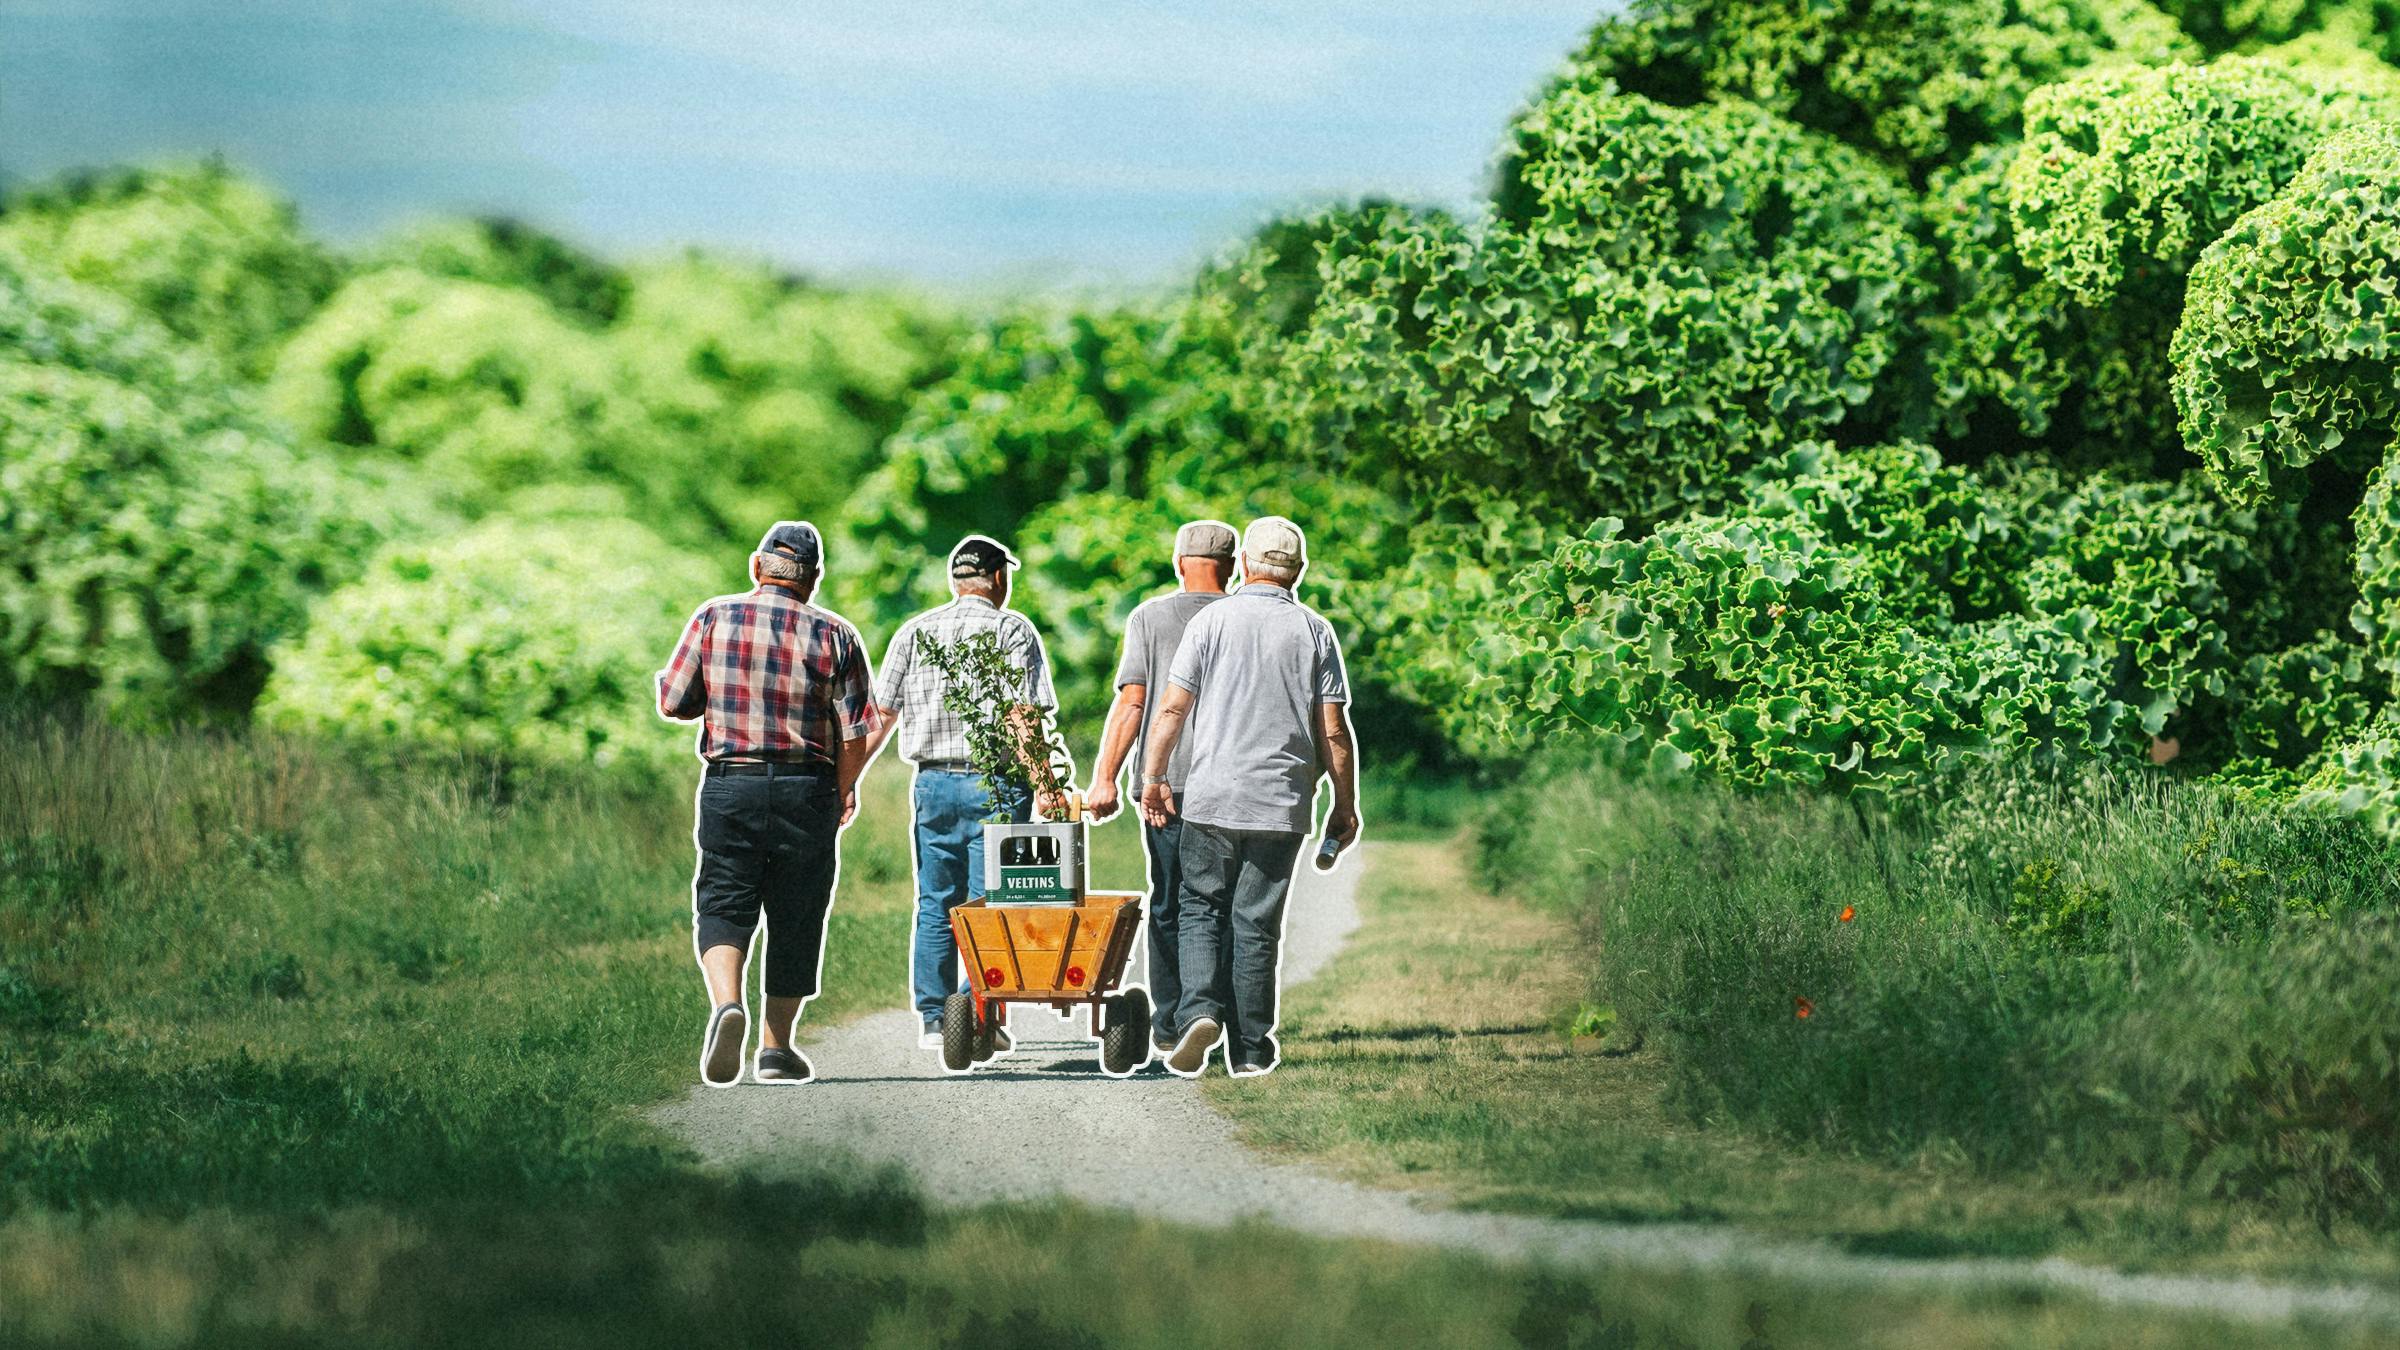 Vier Männer laufen auf einem Feldweg, sie ziehen einen Bollerwagen hinter sich her. Im Huntergrund türmt sich Grünkohl.